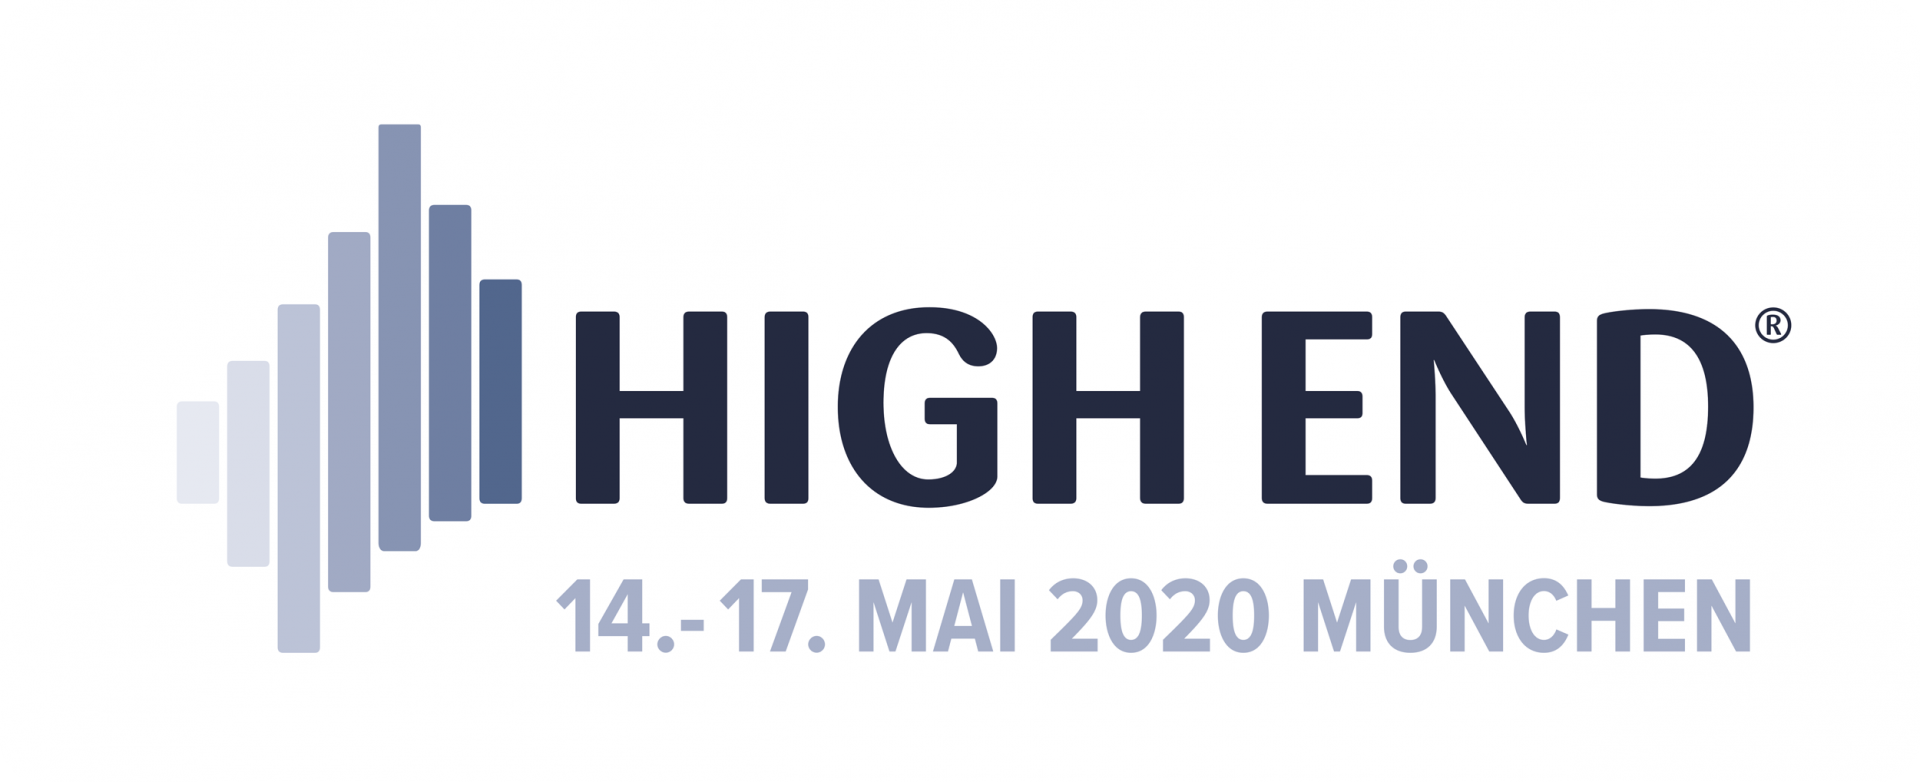 High-End 2020 Munchen